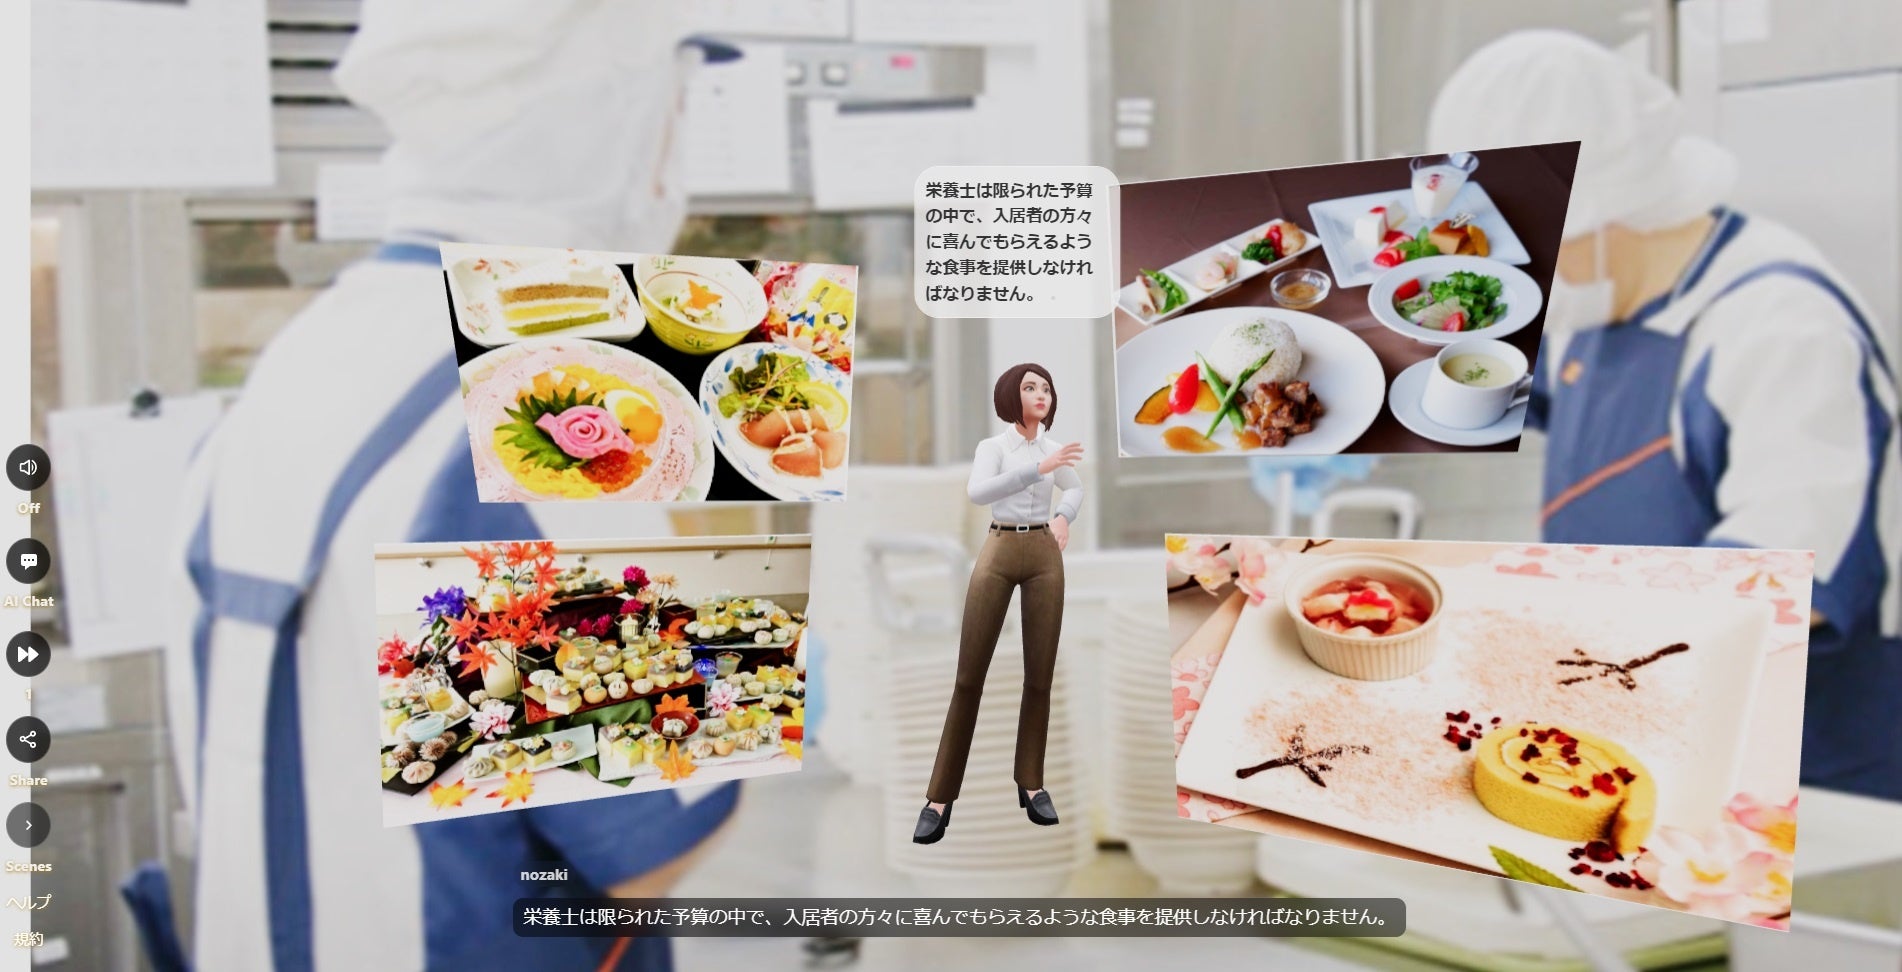 【日清医療食品】AIアバター広報社員を採用。バーチャルキッチンツアーをアバターが実施